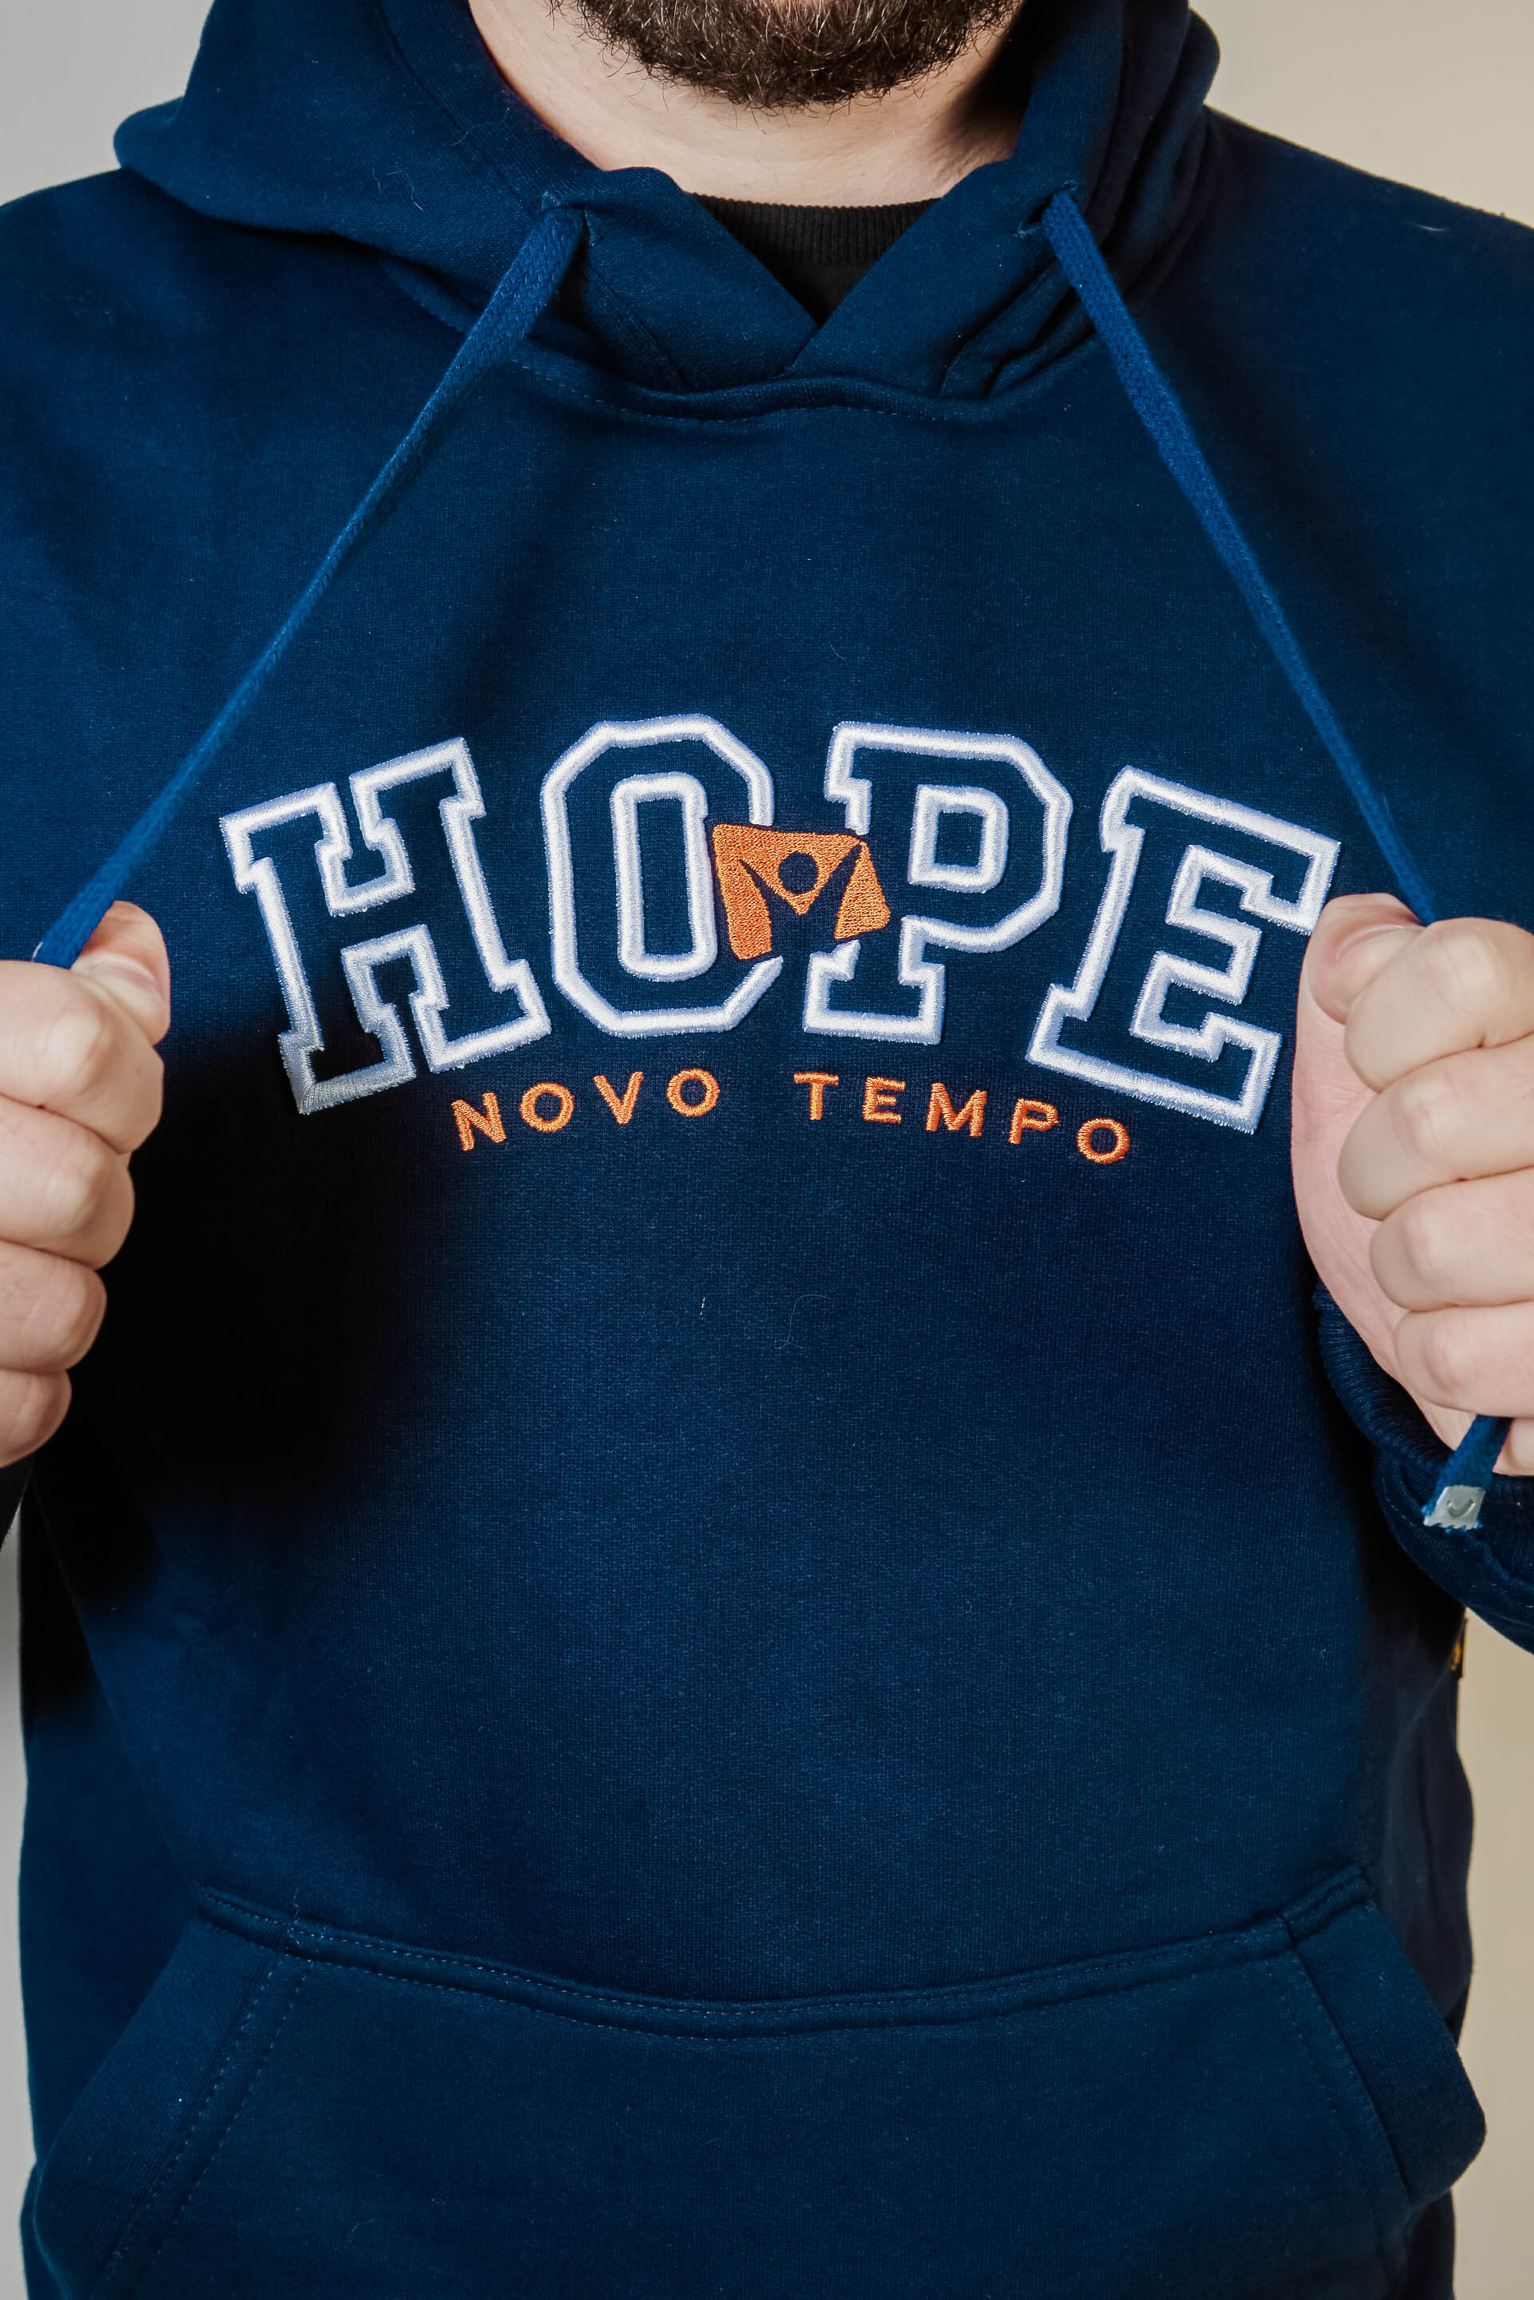 Moletom da Novo Tempo - Hope (Azul Marinho e Branco)